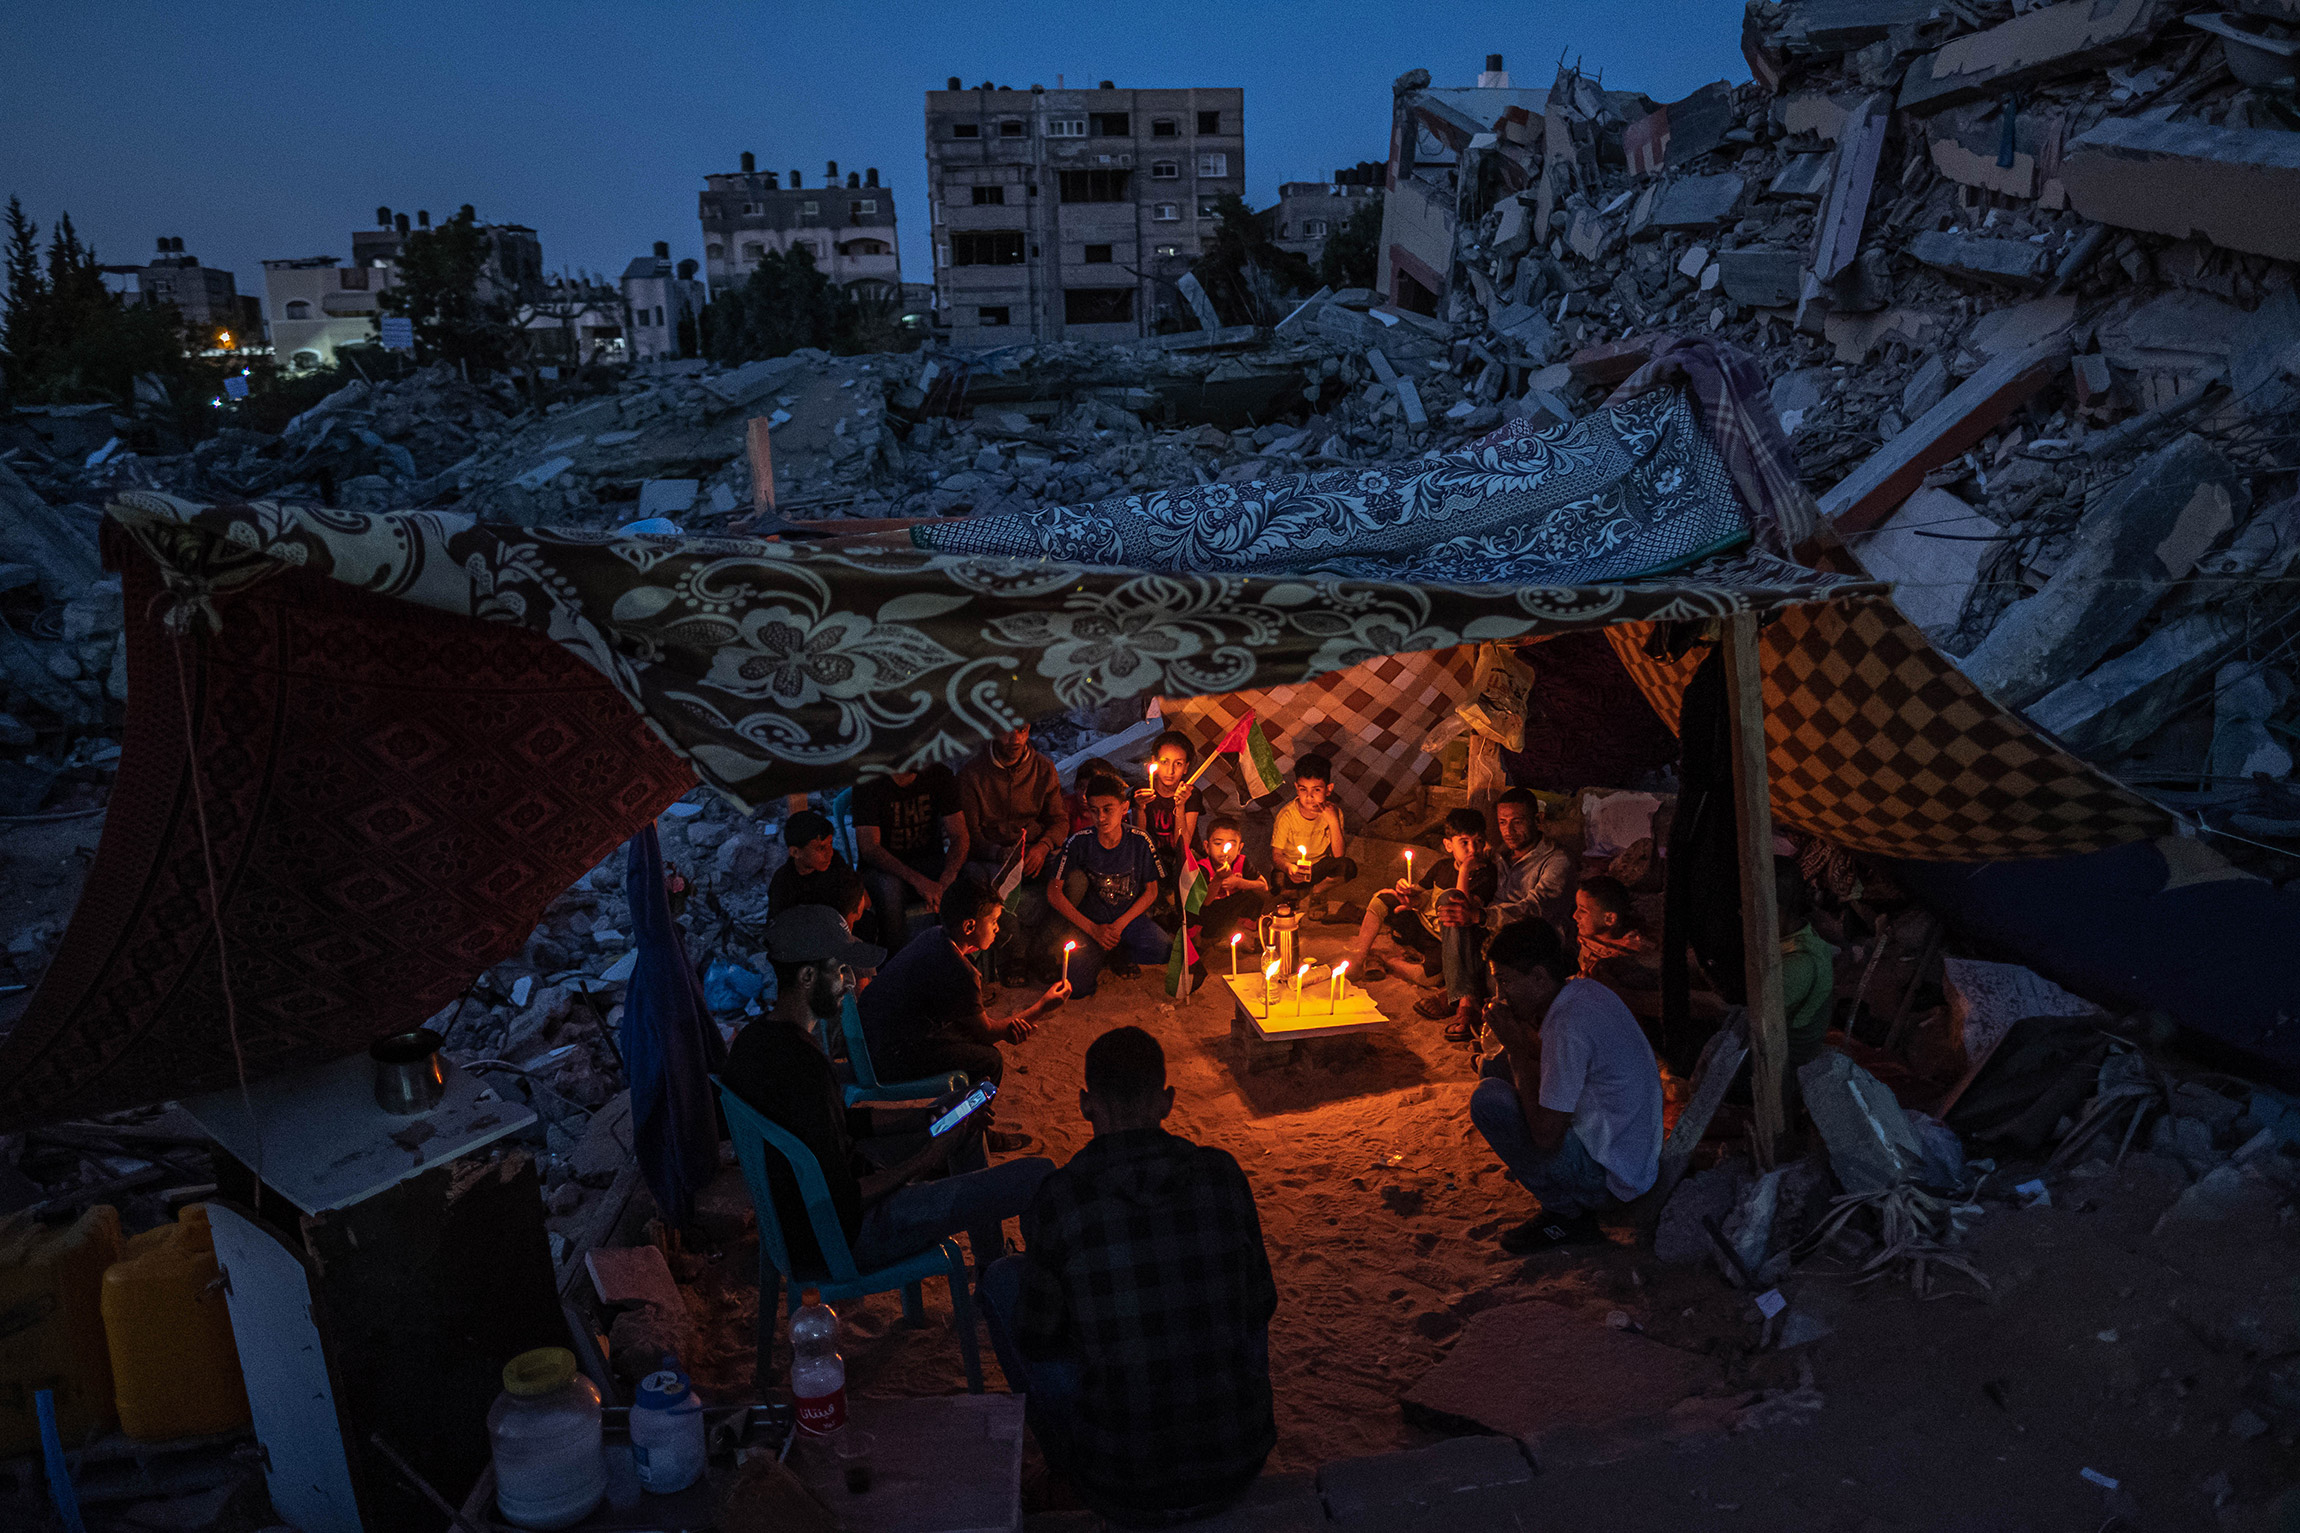 Автор:  Фатима Шбаир, Газа.

Палестинские дети после акции протеста против обстрелов Газы, 25 мая 2021 года&nbsp;&mdash; во время прекращения огня после 11-дневного обострения конфликта между исламистским движением ХАМАС и Израилем